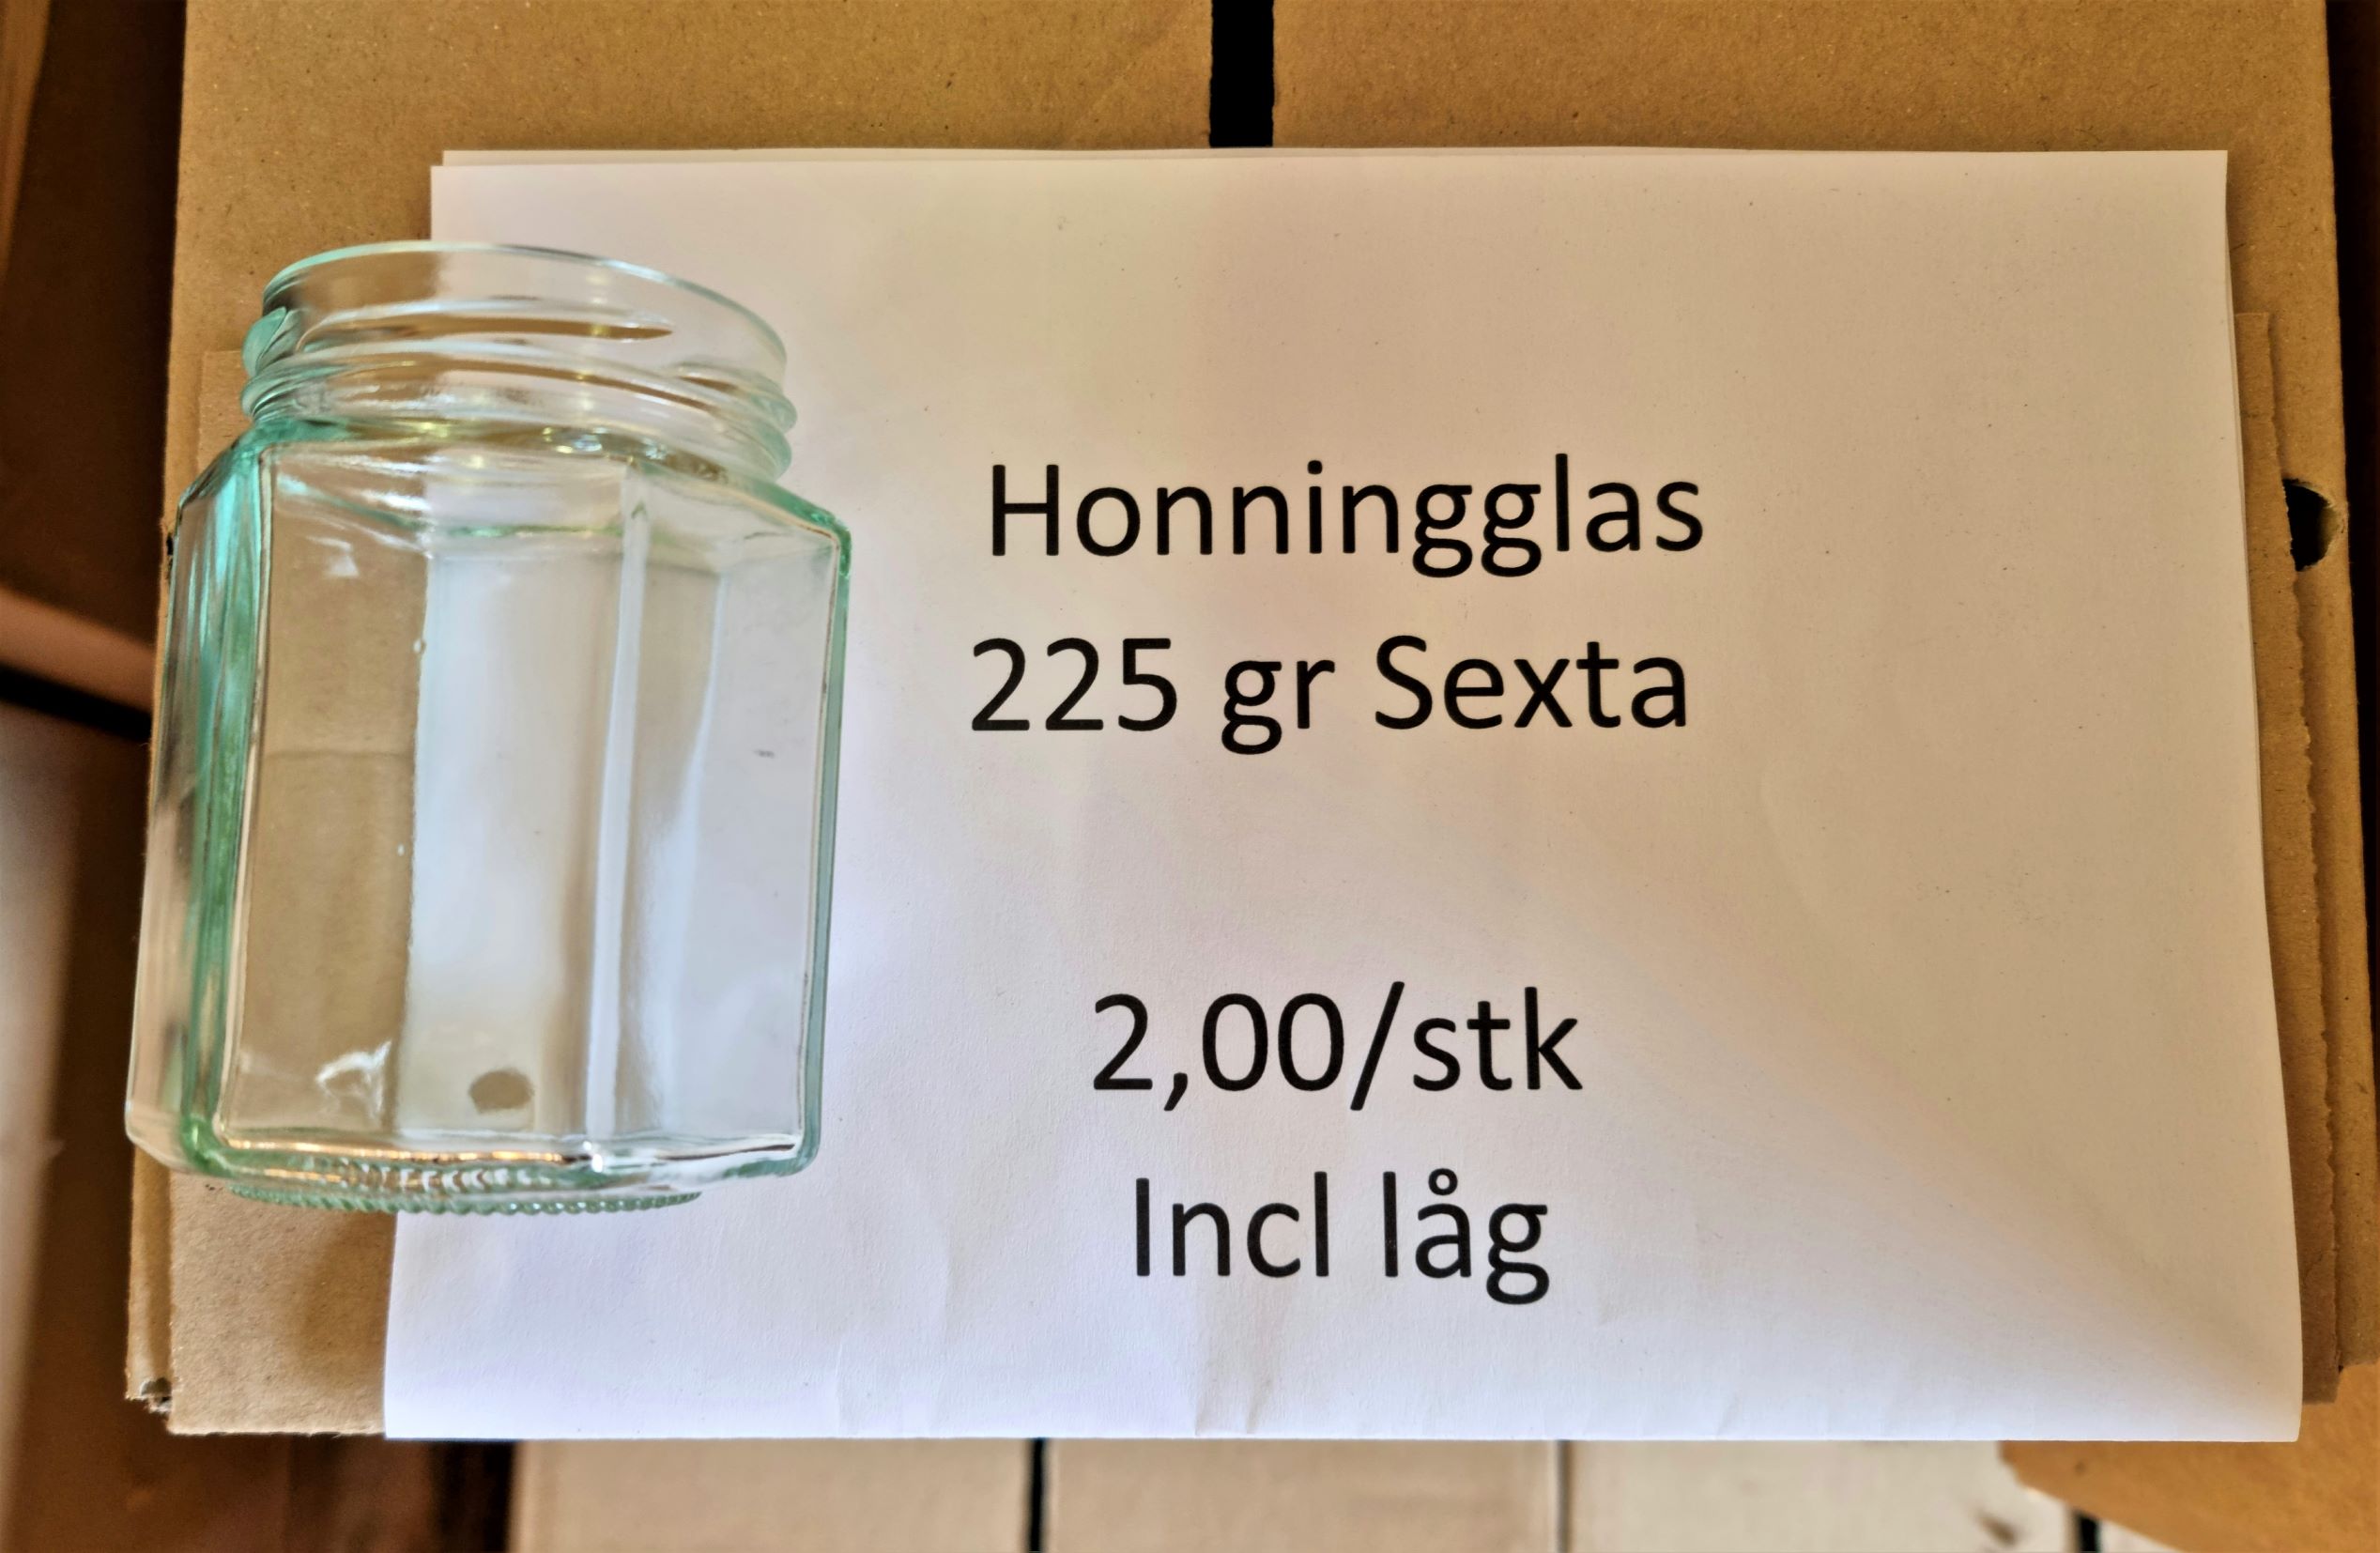 Honningglas 225 gr Sexta